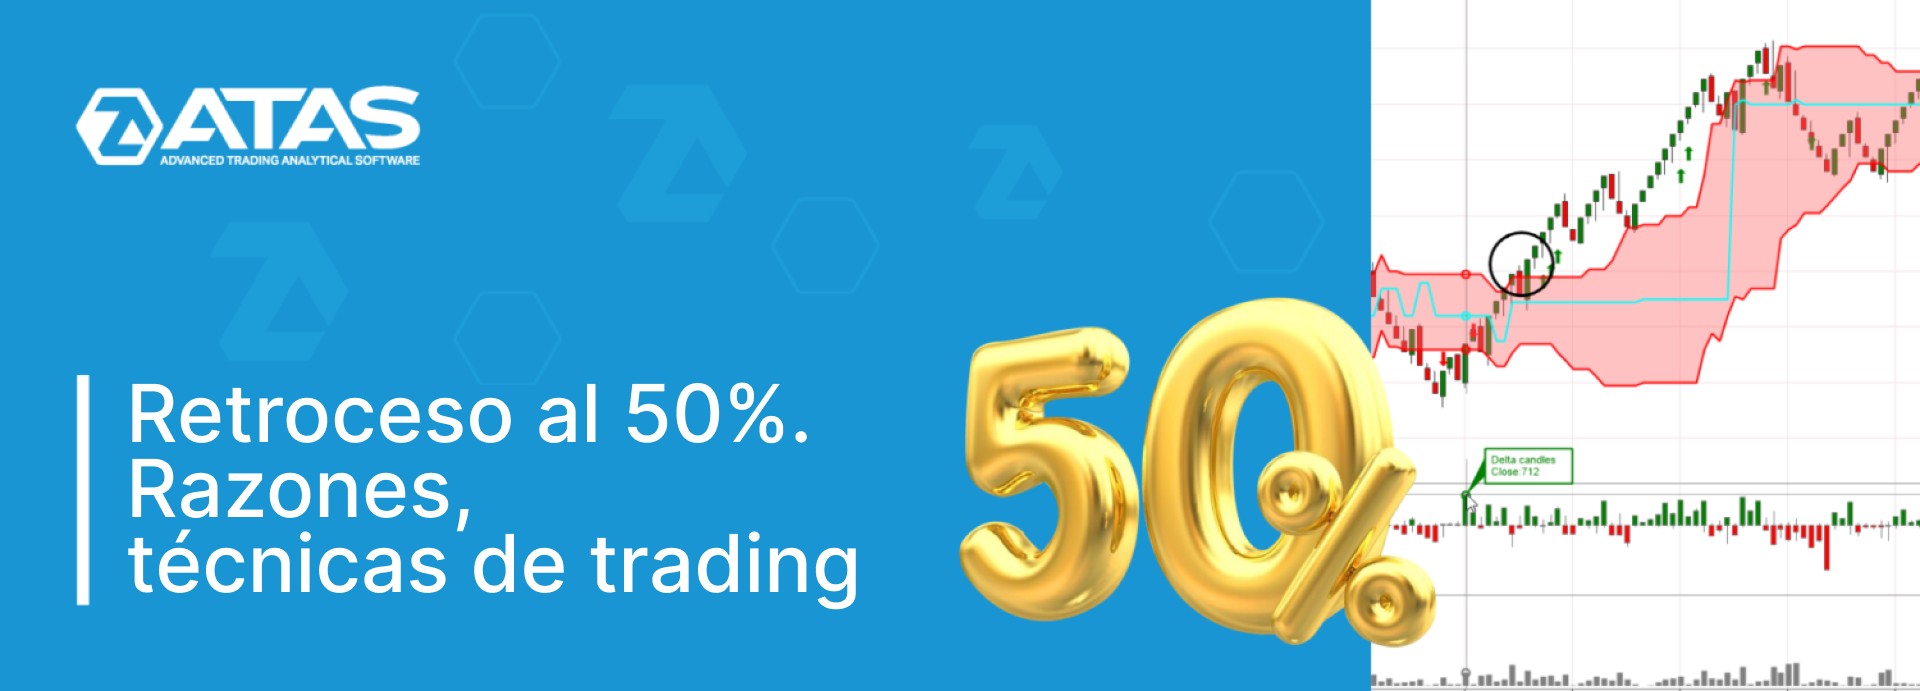 Retroceso al 50%. Razones, técnicas de trading